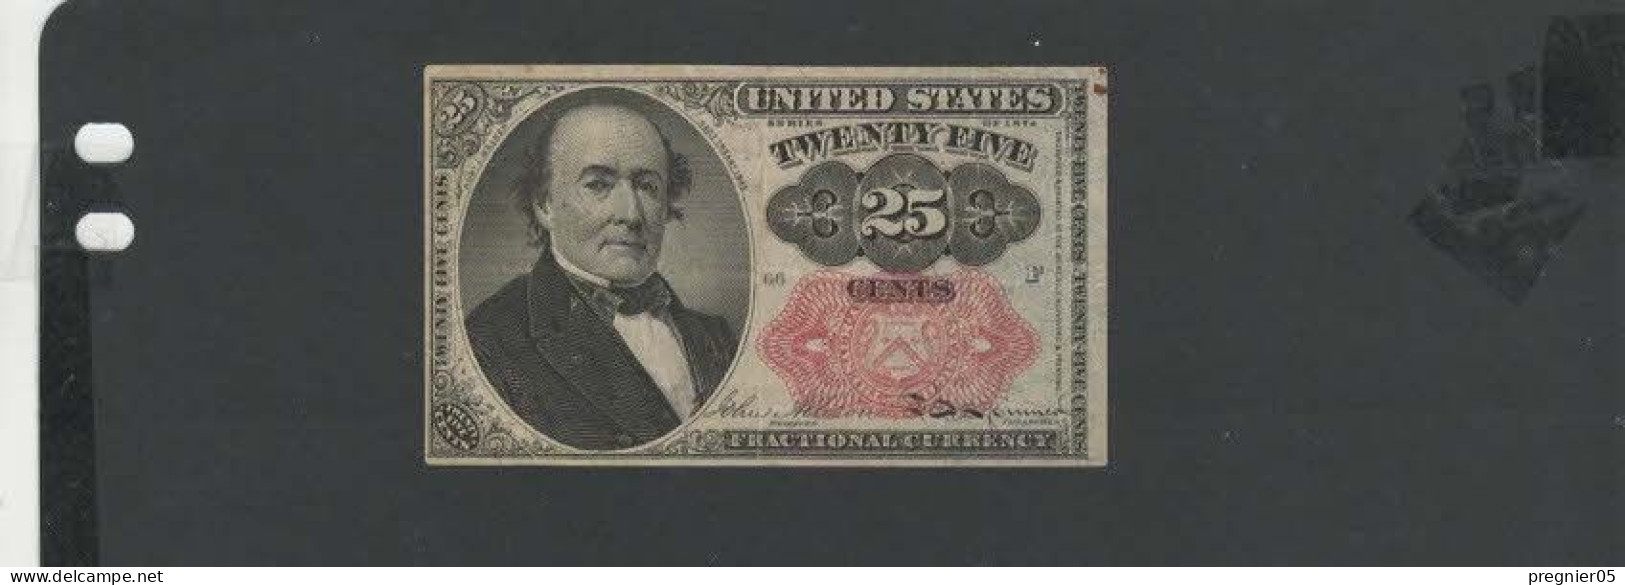 USA - Billet 25 Cents 1874  SUP/XF  P.123 - Billetes De Estados Unidos (1862-1923)